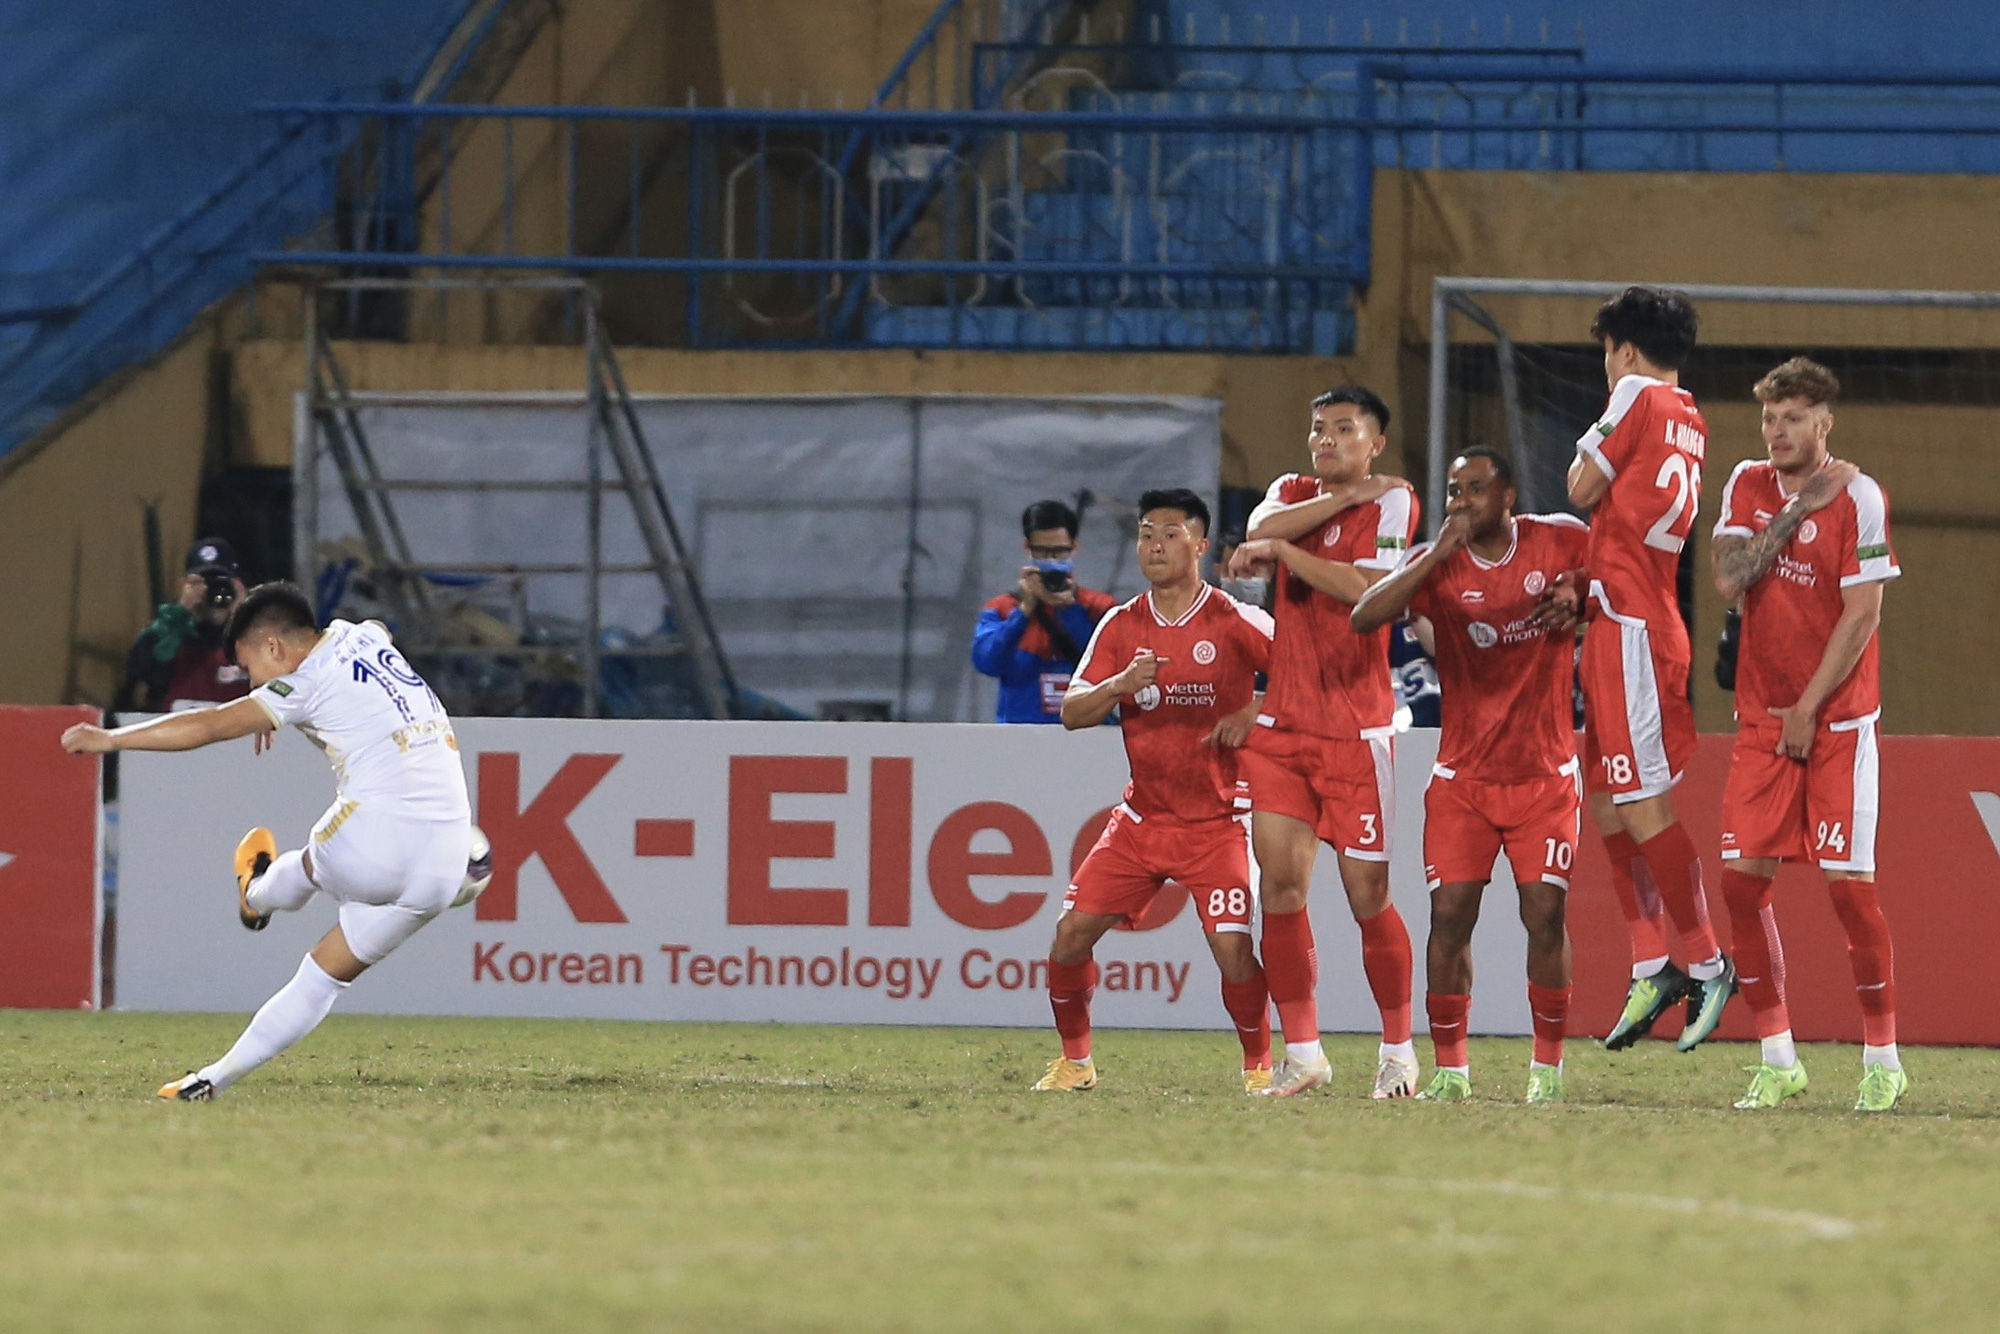 Quang Hải dốc bầu tâm sự sau khi cùng Hà Nội FC đá bại Viettel - Ảnh 1.